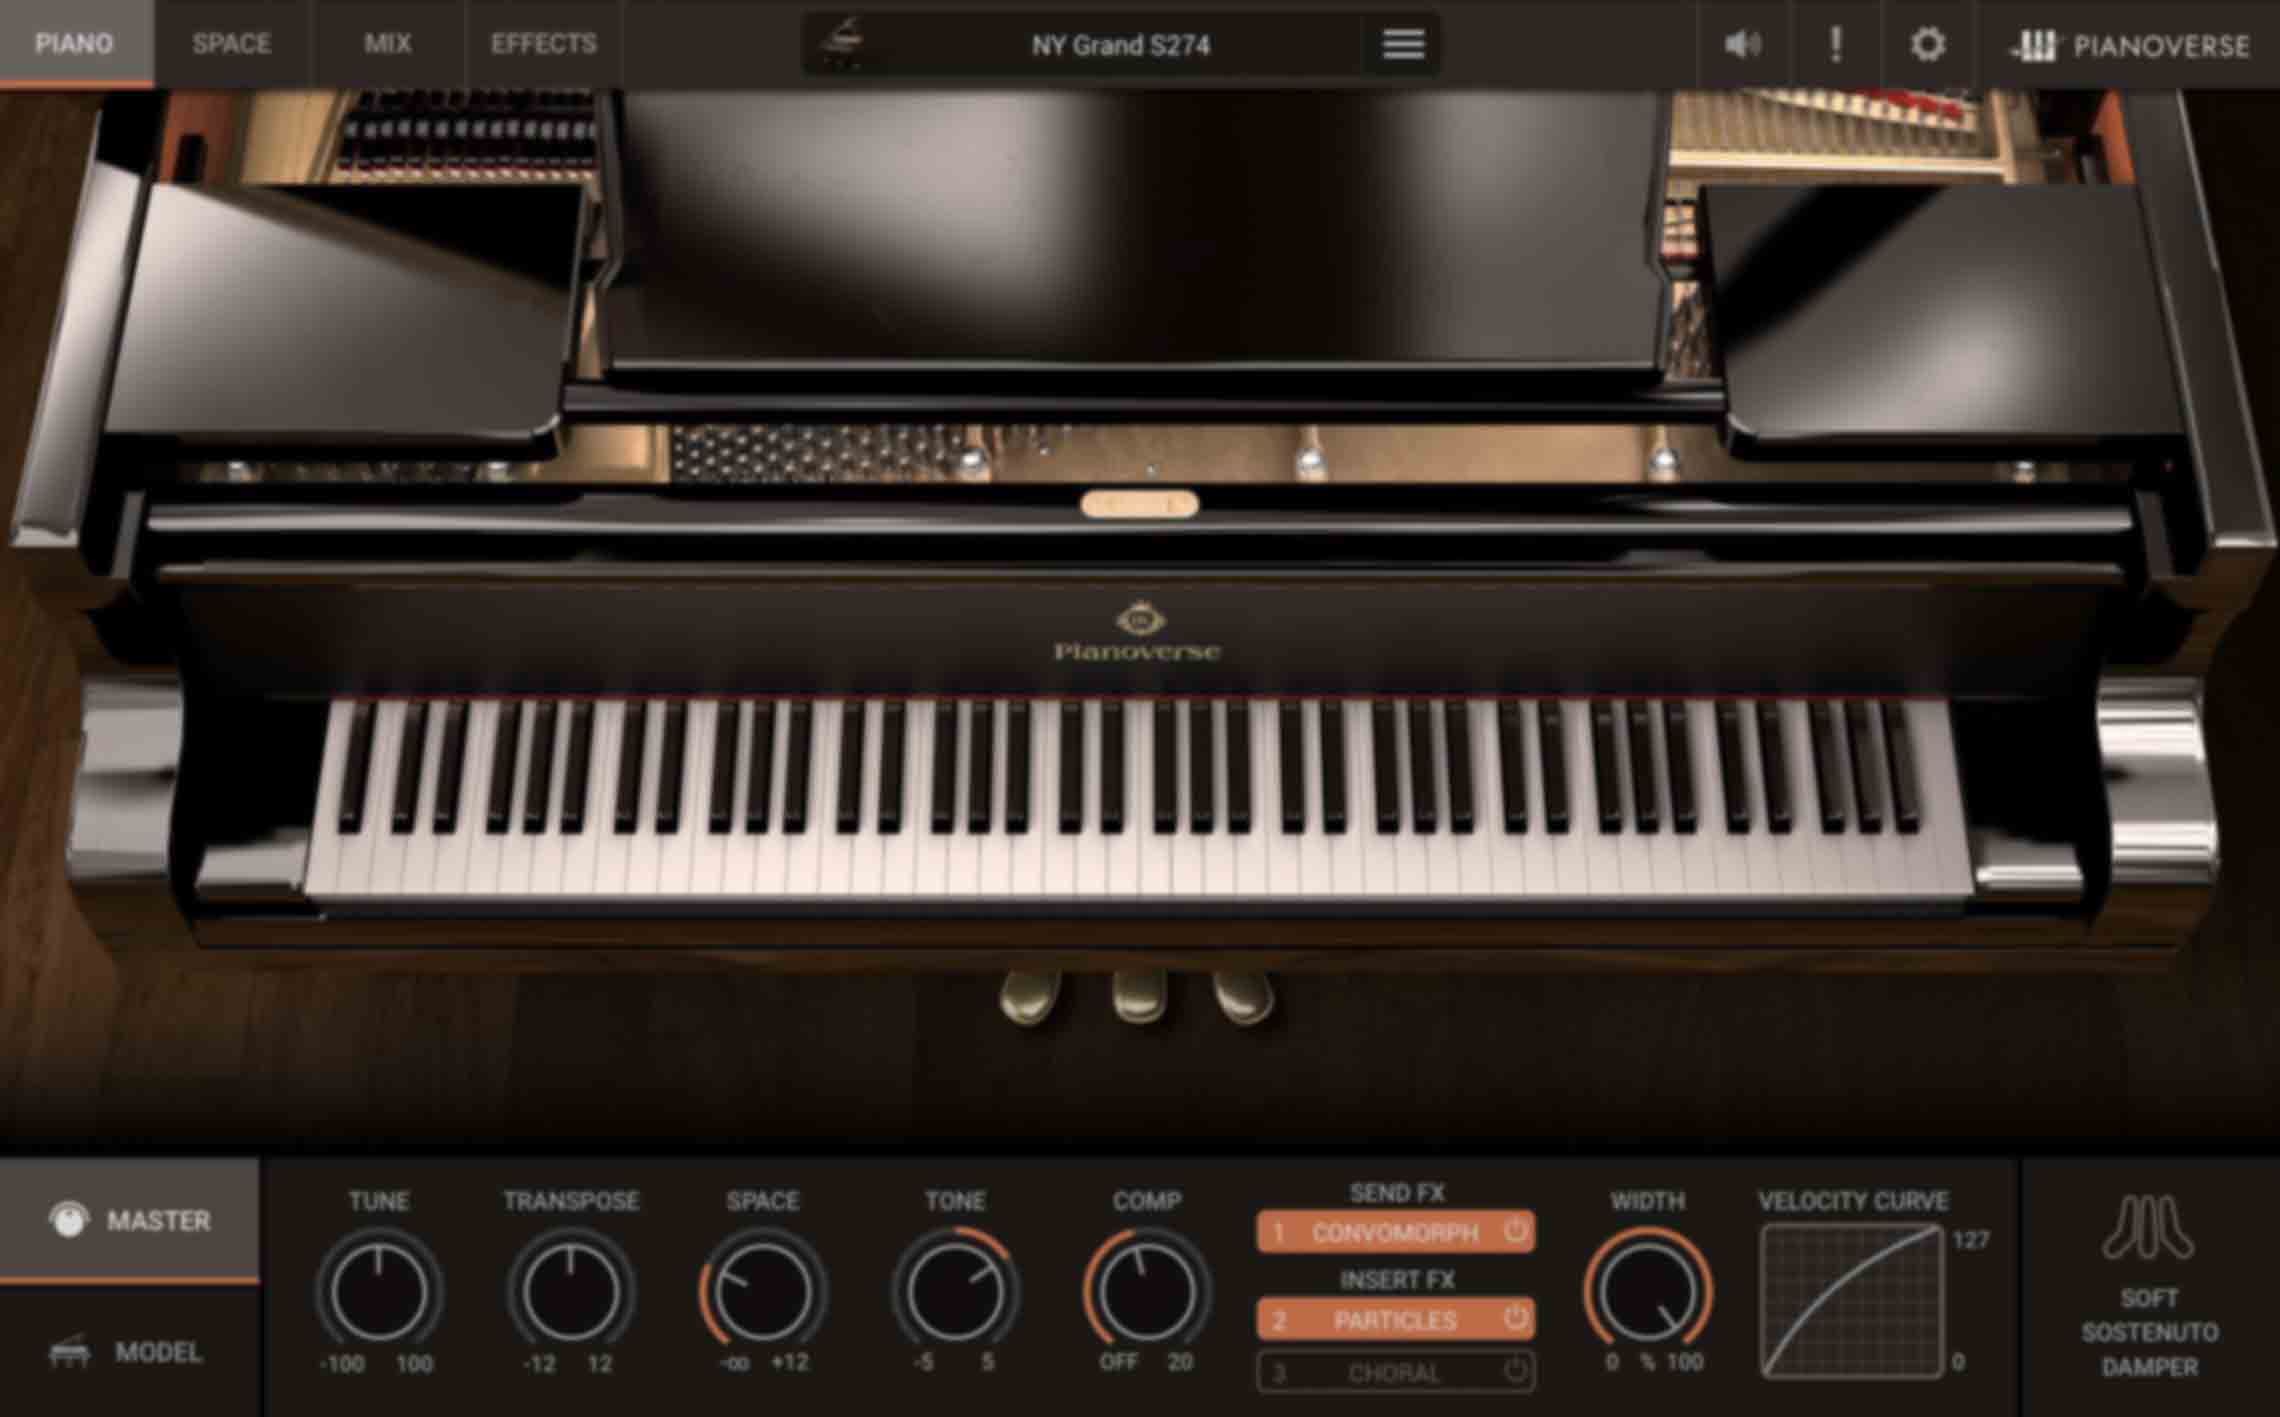 PIANO/MASTER - Fornece configurações do desempenho geral do piano